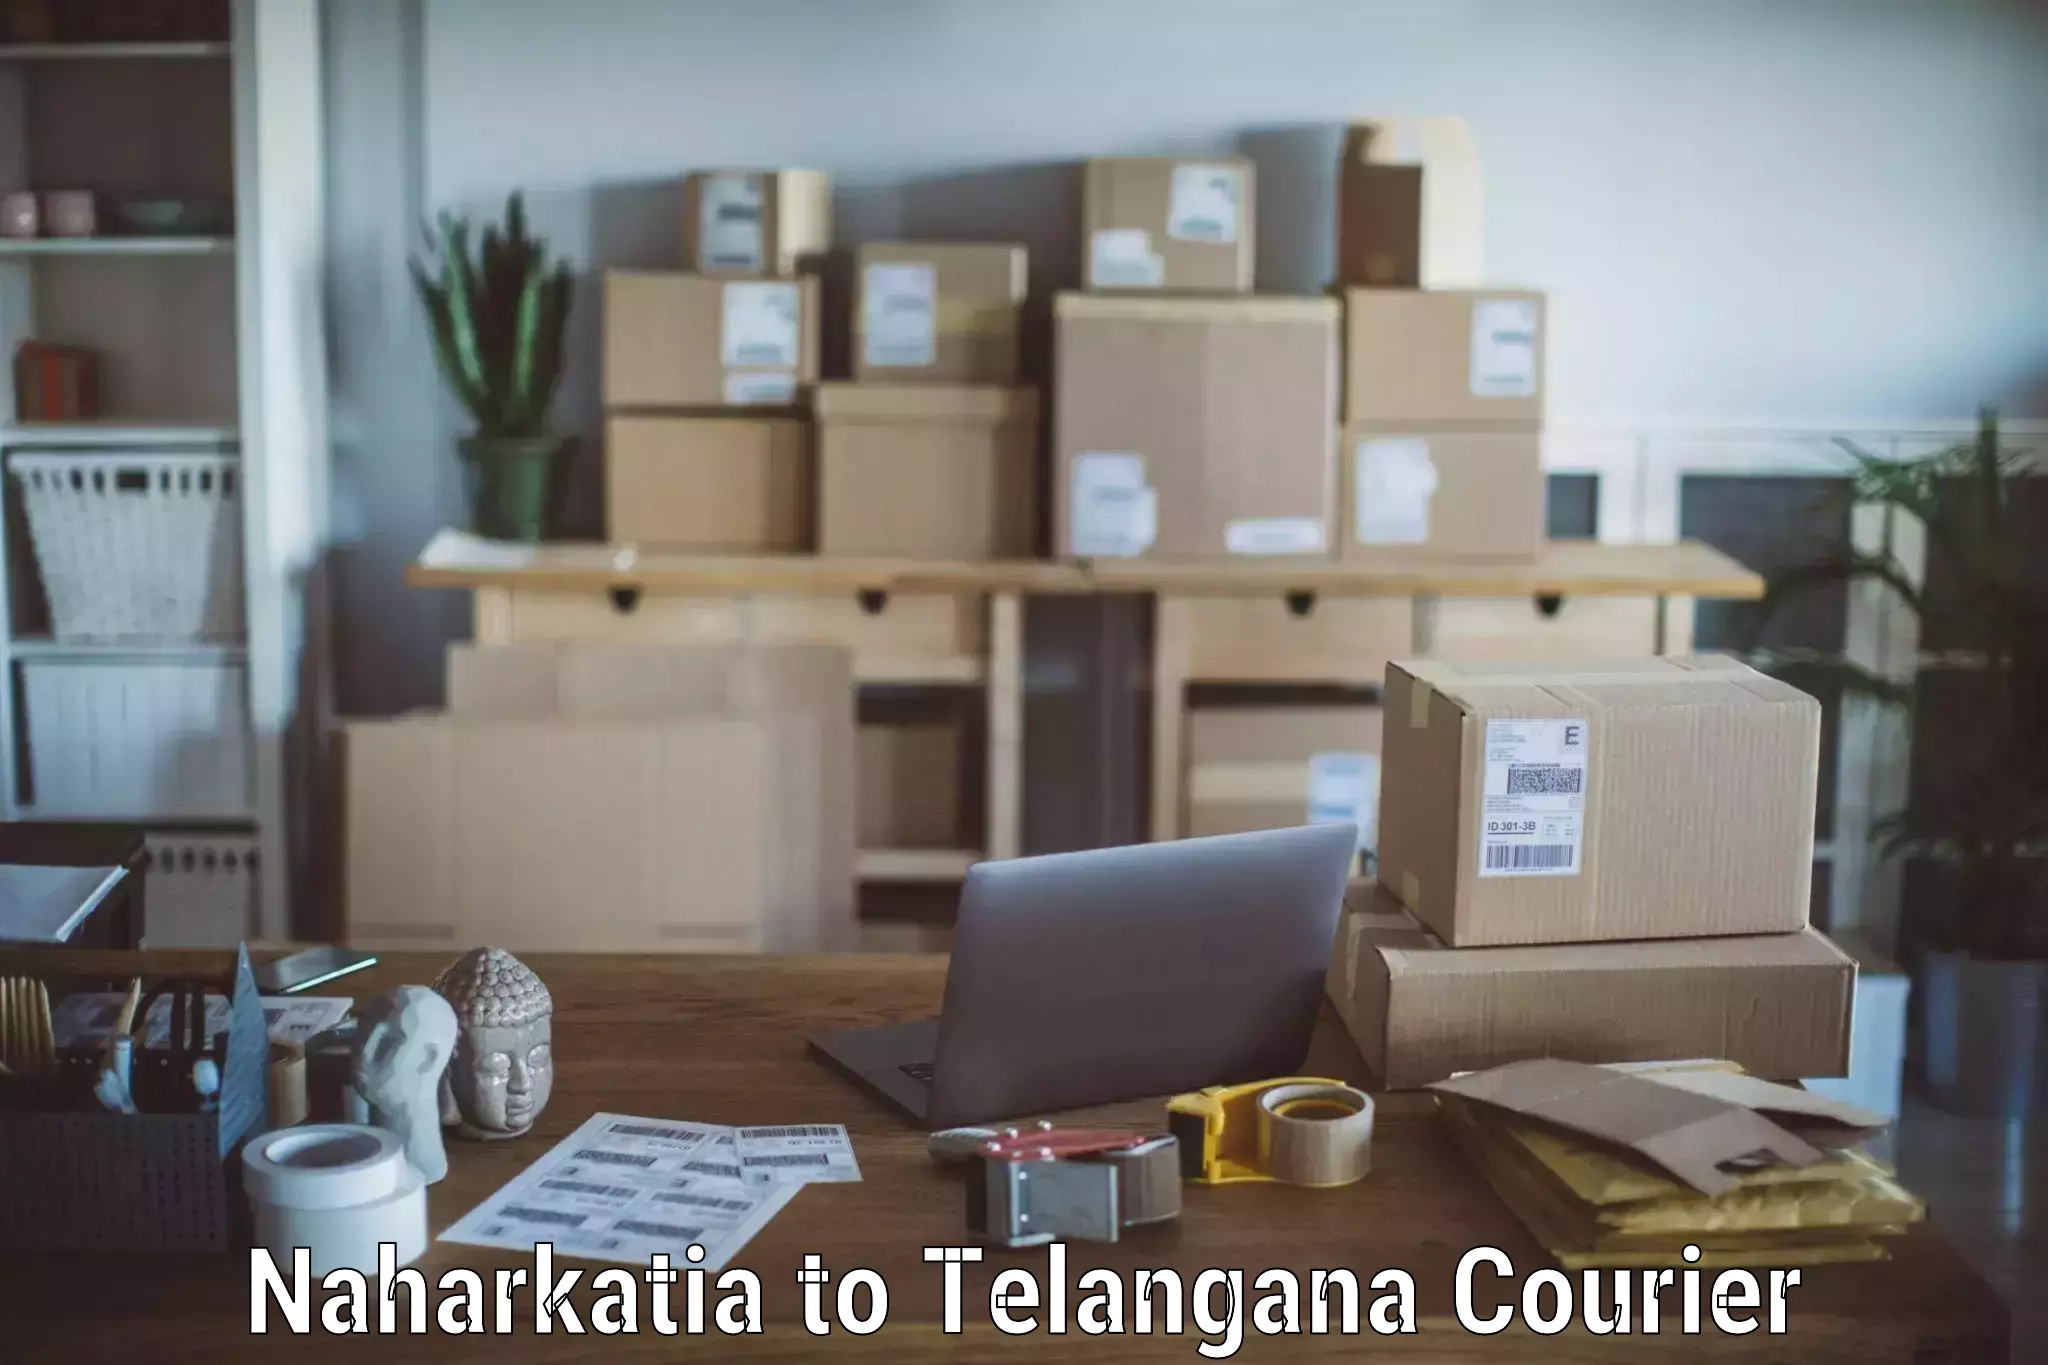 Full-service furniture transport in Naharkatia to Telangana